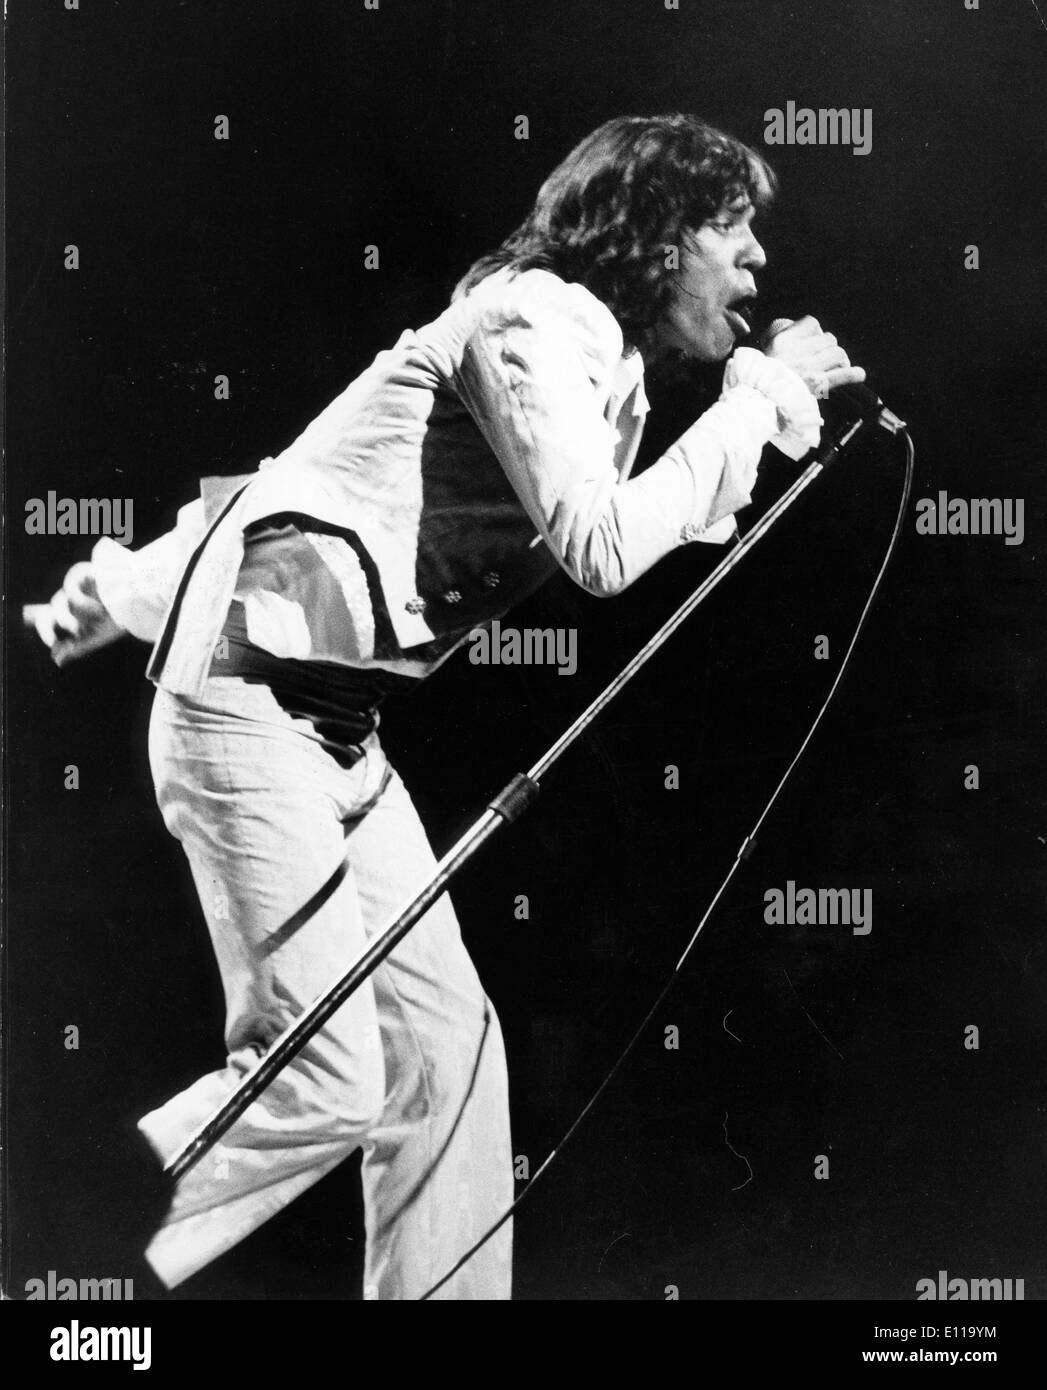 Maggio 22, 1976; Londra, Inghilterra, Regno Unito; cantante Mick Jagger del famoso British gruppo rock i Rolling Stones, il più lungo del gruppo superstite nella storia del rock and roll, raffigurato mentre canti davanti a 17.000 tifosi a Earl's Court. (Credito Immagine: KEYSTONE Pictures USA/ZUMAPRESS.com) Foto Stock